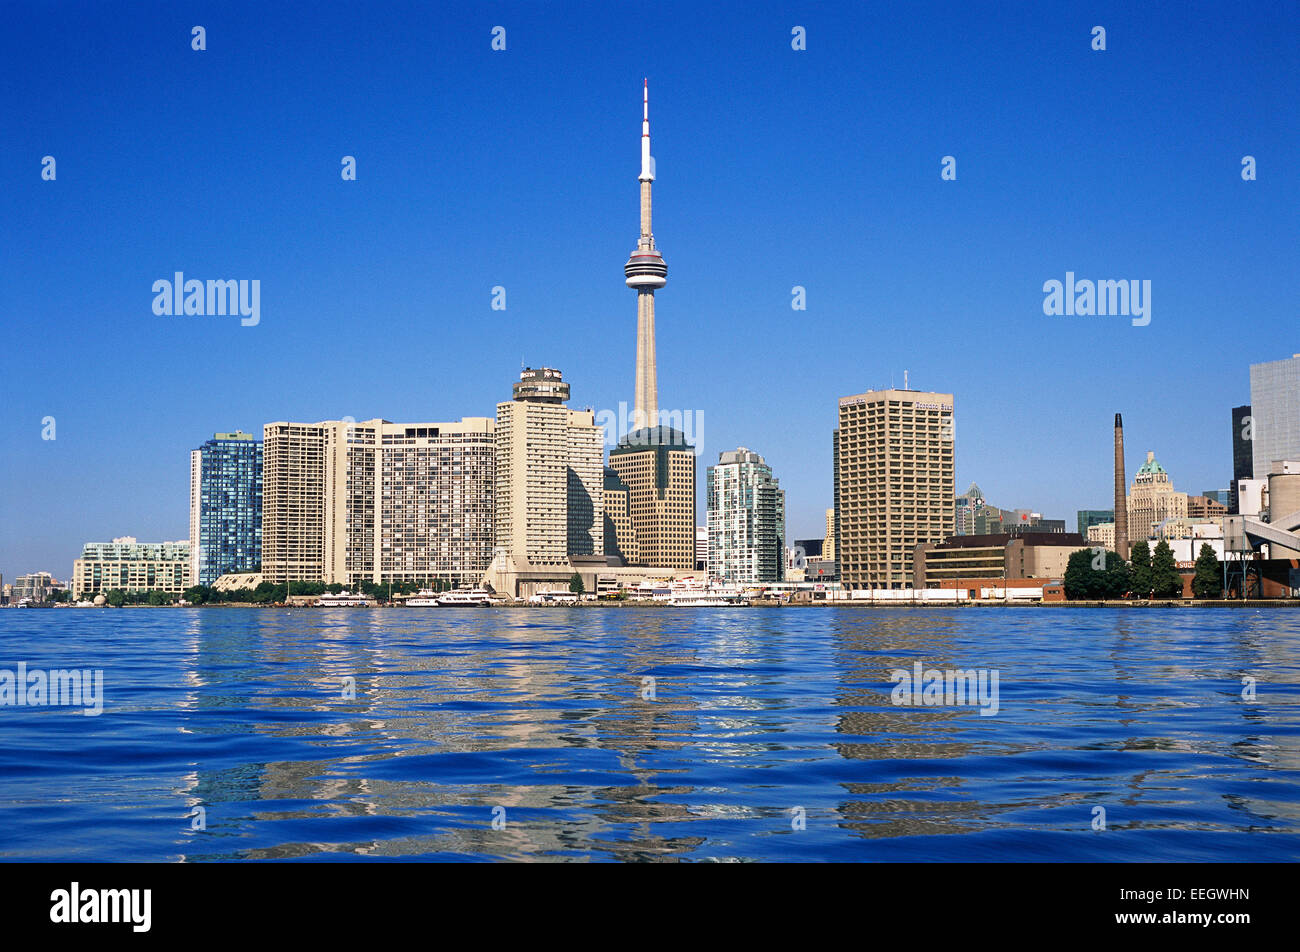 Le port de Toronto Skyline,Ontario Canada Banque D'Images